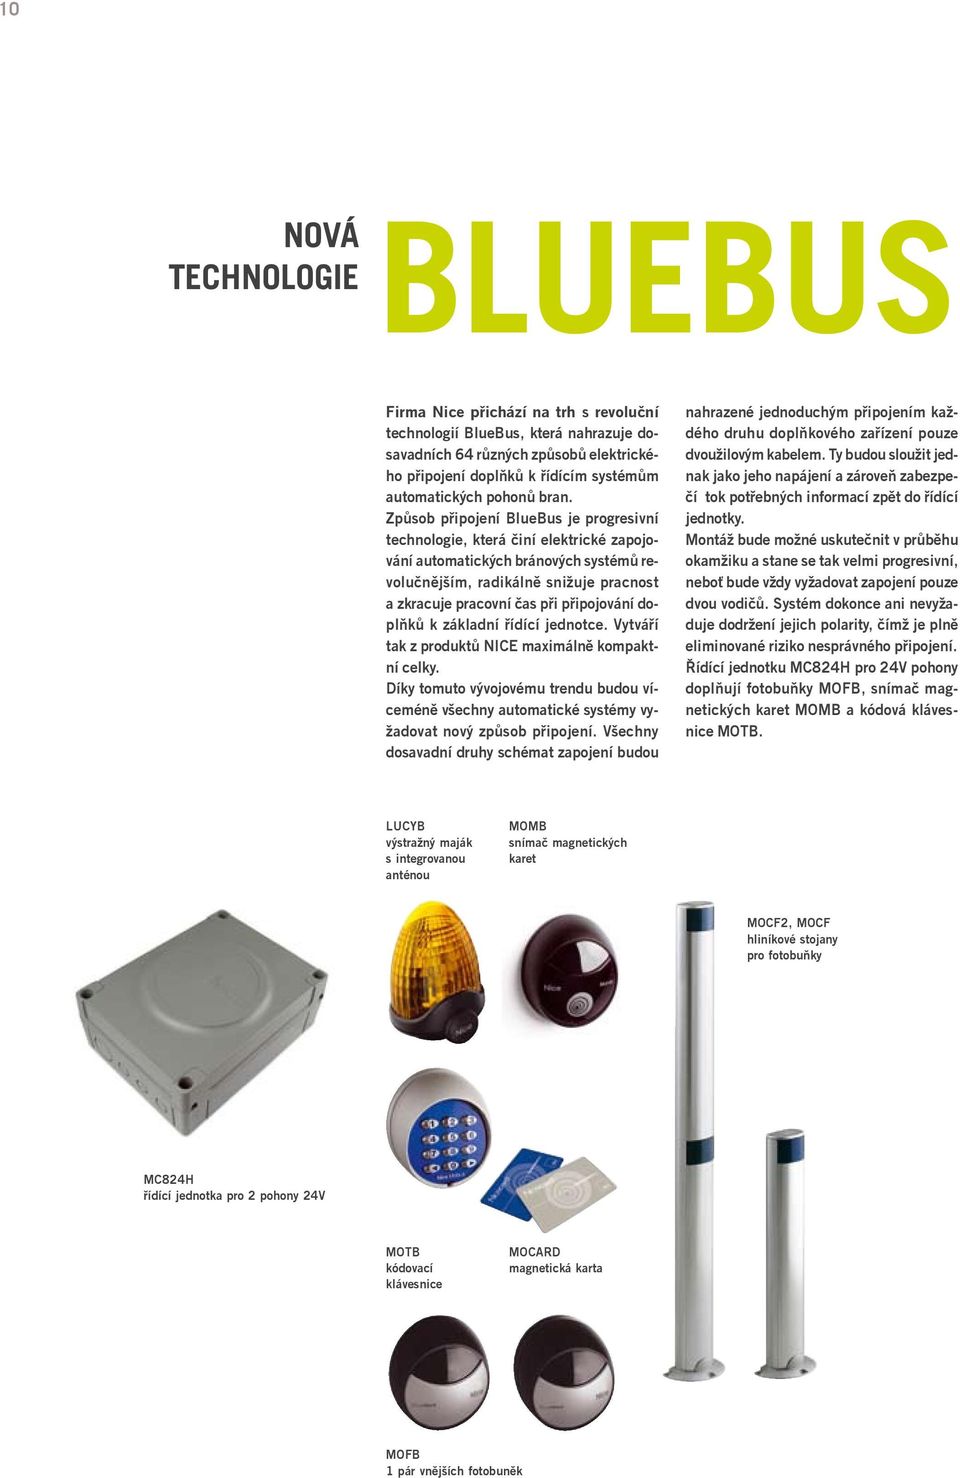 Způsob připojení BlueBus je progresivní technologie, která činí elektrické zapojování automatických bránových systémů revolučnějším, radikálně snižuje pracnost a zkracuje pracovní čas při připojování